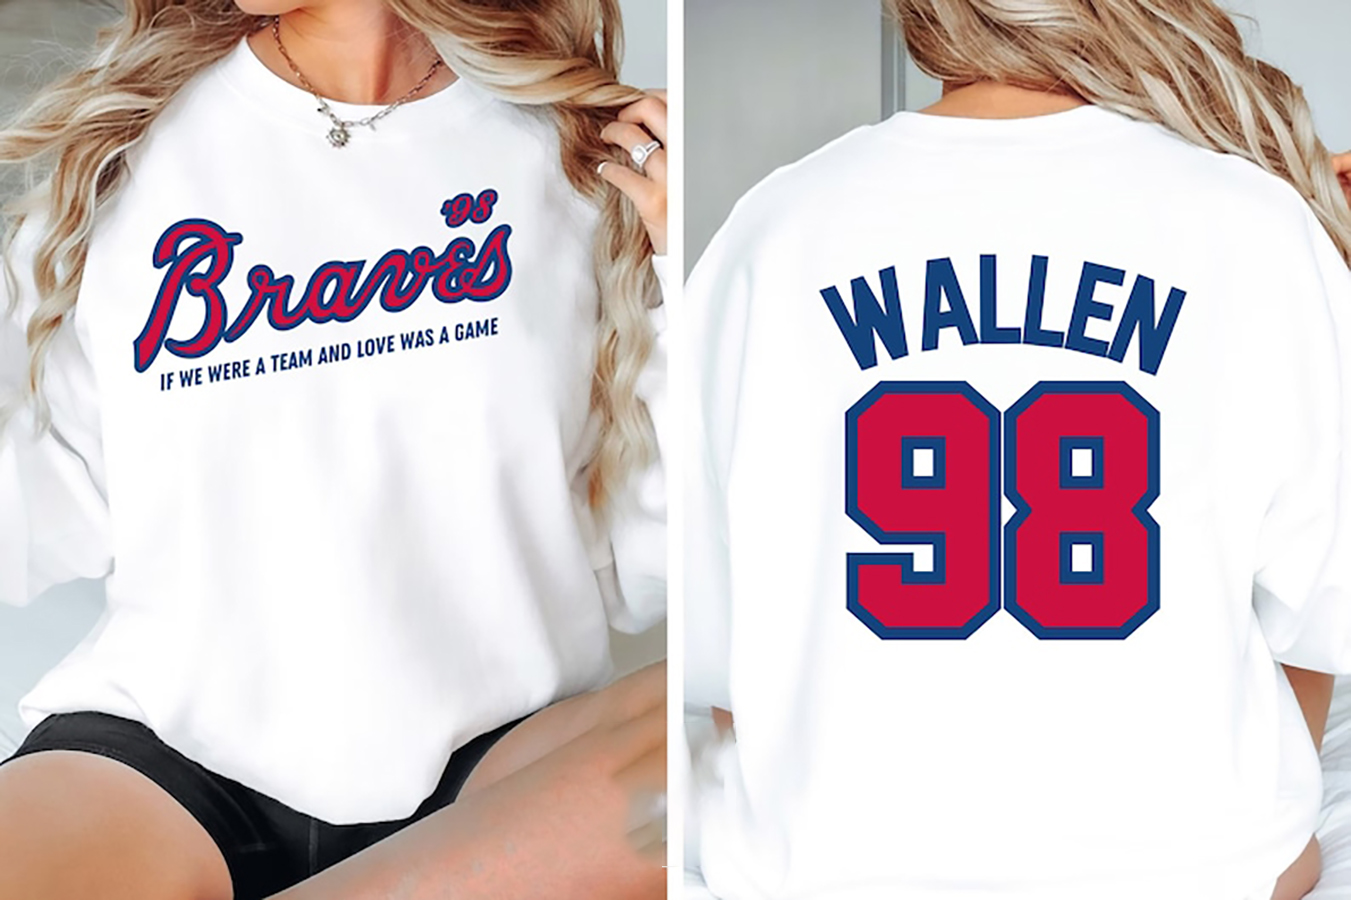 98 Braves Tshirt Womens 98 Braves Shirt Womens Morgan Wallen 